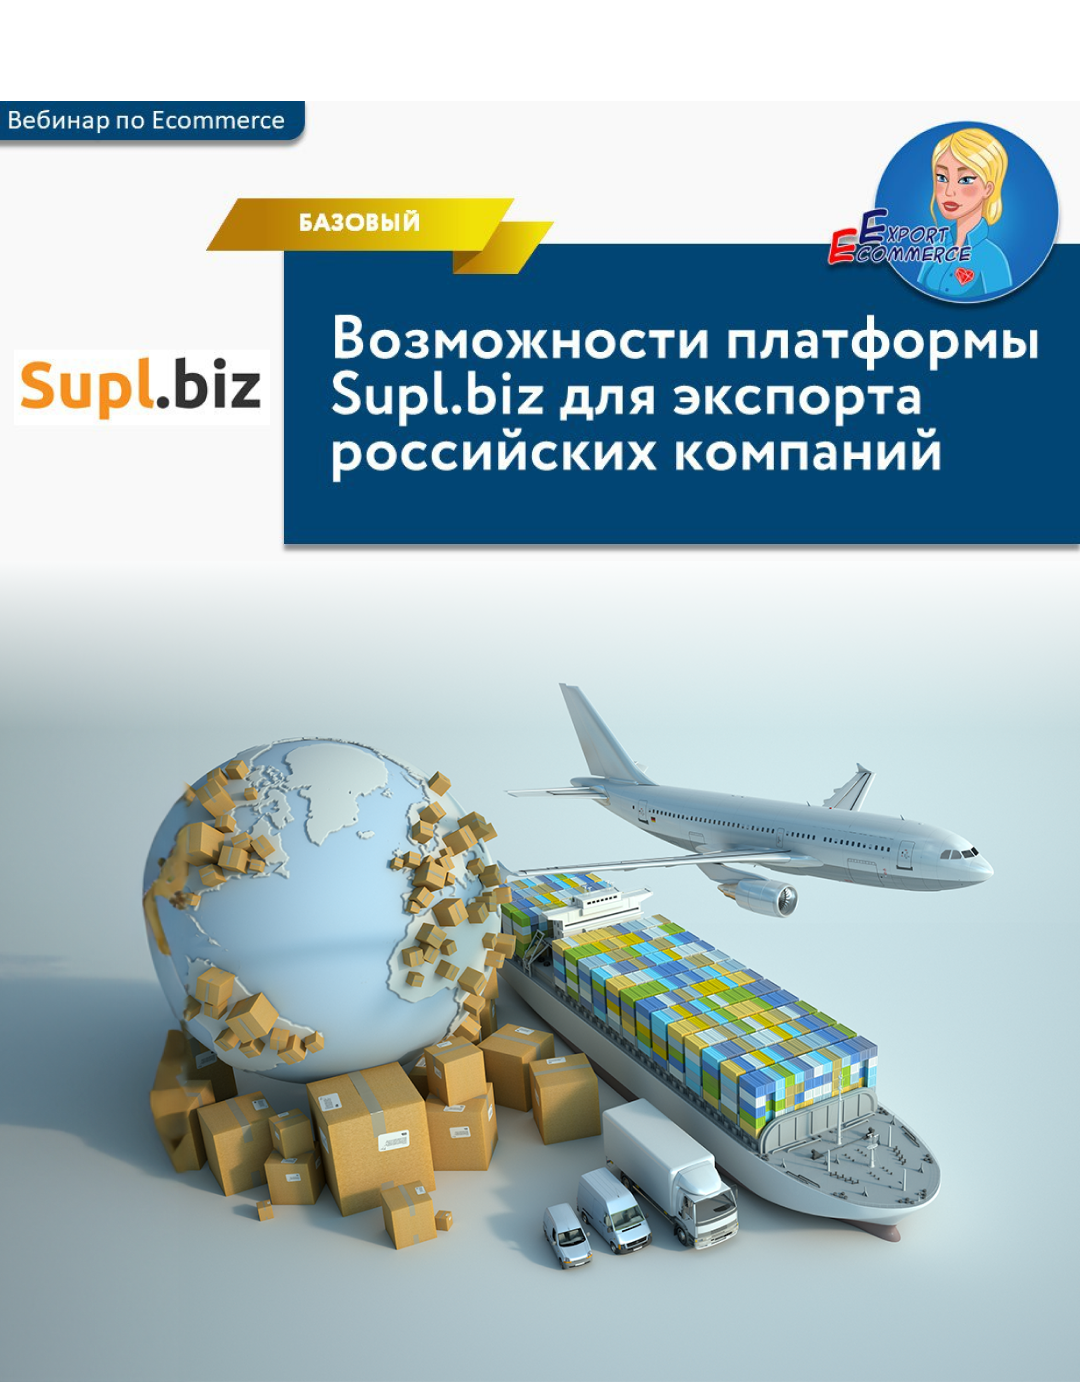 Возможности платформы Supl.biz для экспорта российских компаний